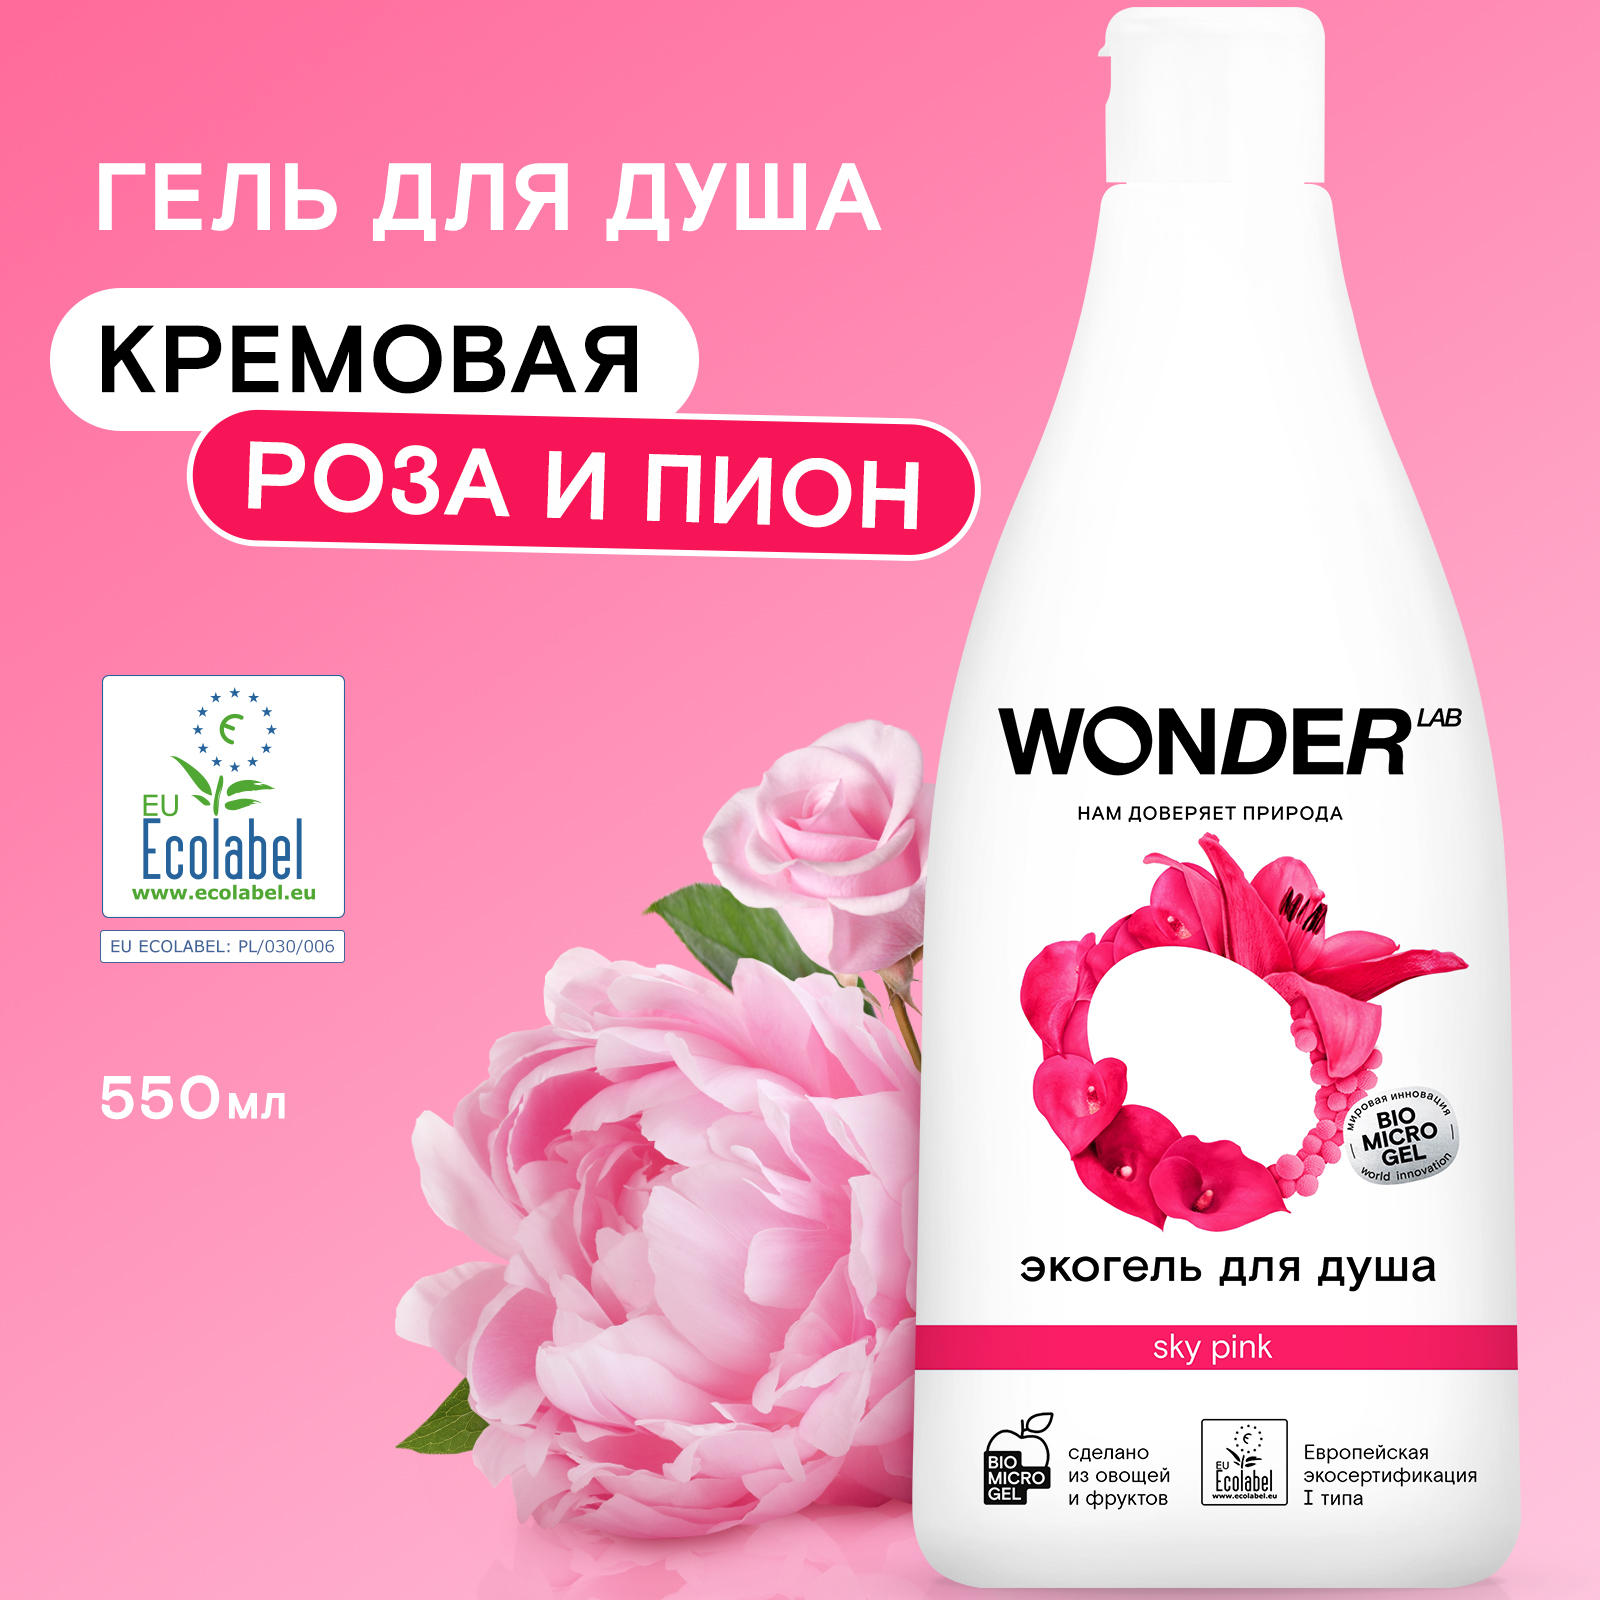 Экогель для душа Wonder Lab Sky Pink, 550 мл средства для уборки и дезинфекции мест обитания животных wonder lab 1100